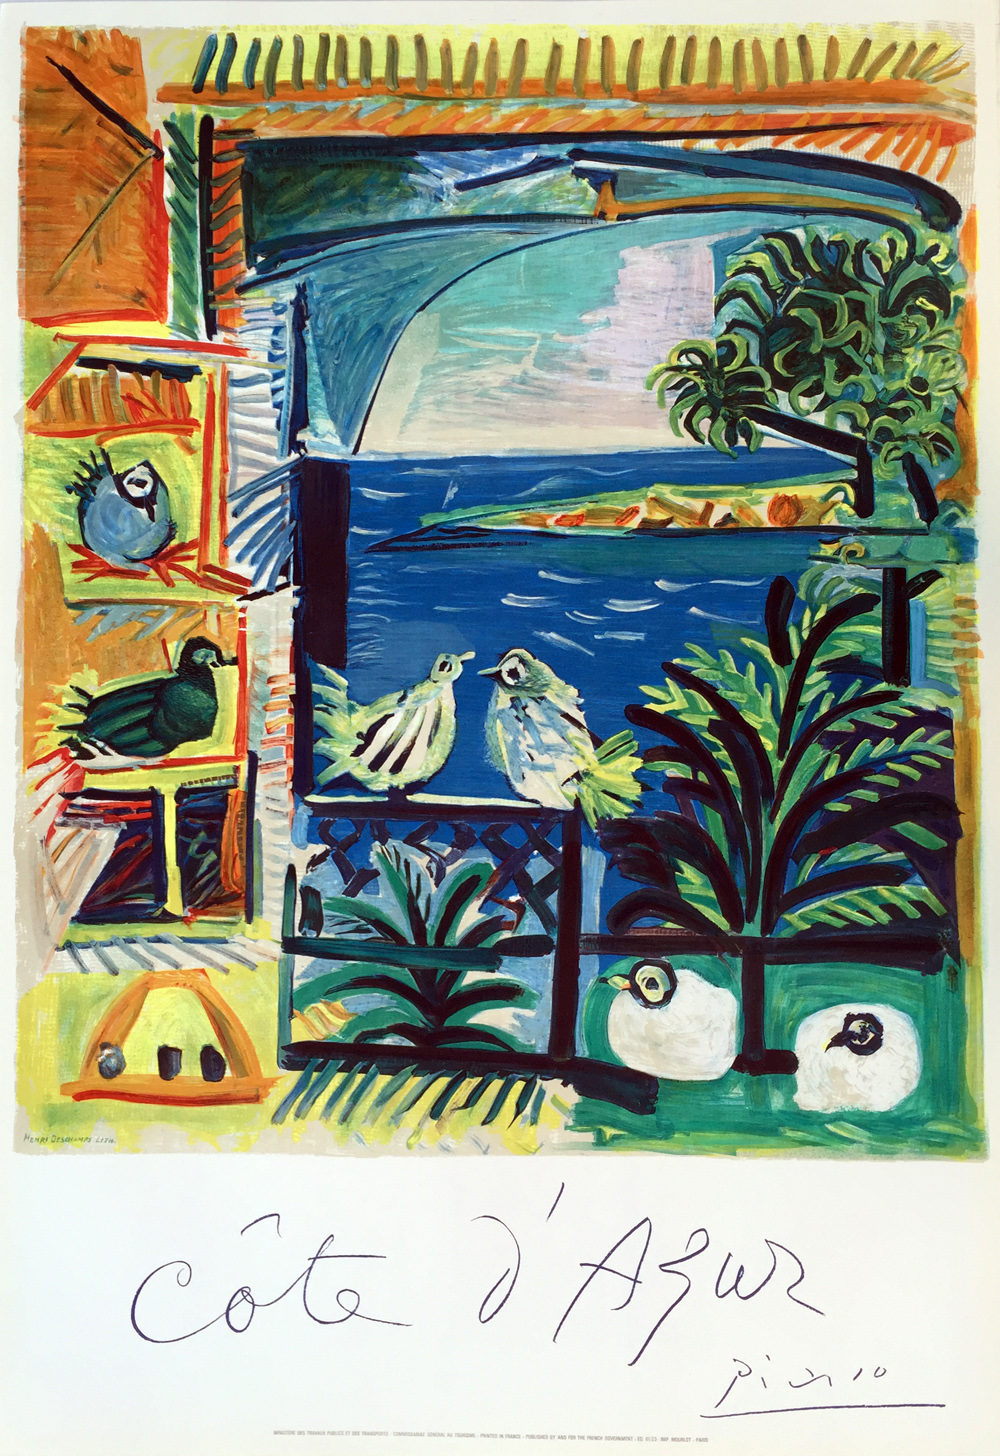 nudler blåhval nitrogen Pablo Picasso - Cote d'Azur 1962 Vintage Lithograph Poster - Denis Bloch  Fine Art